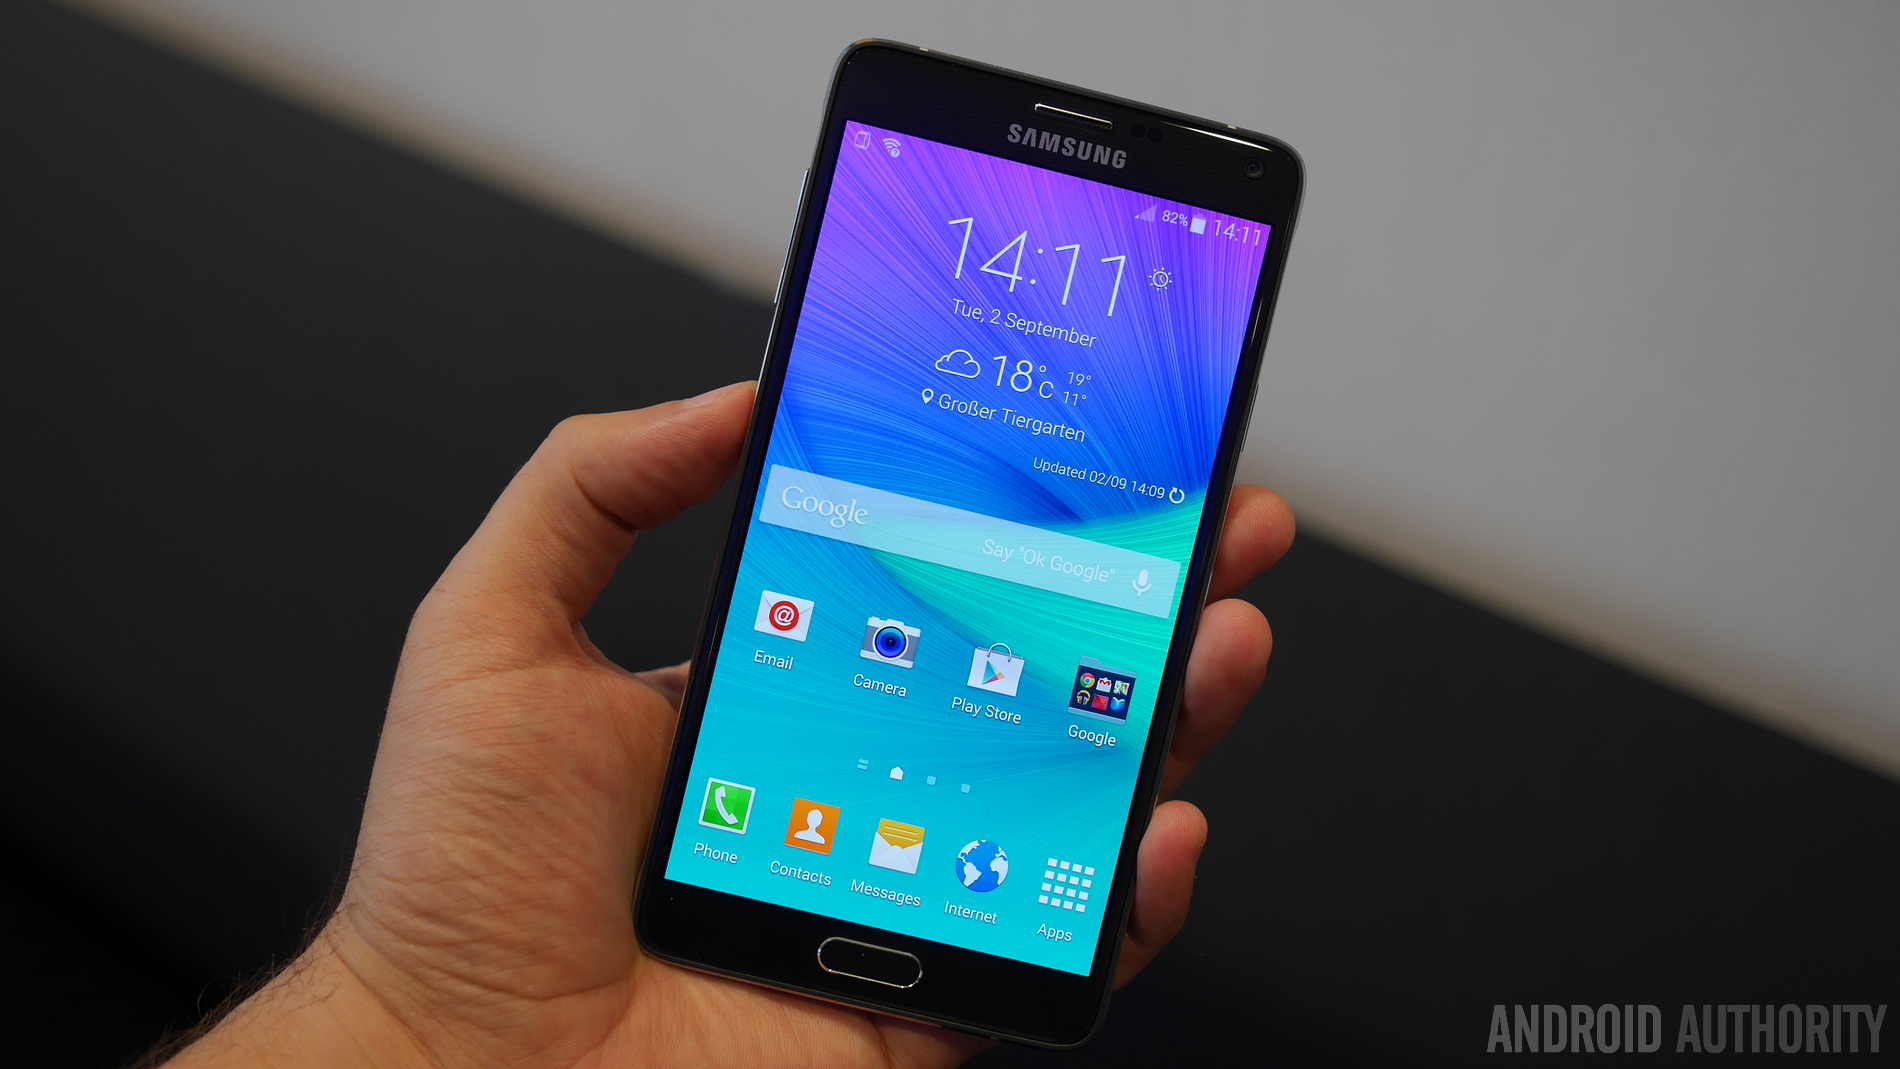 Samsung Galaxy Note 4 Sm Купить